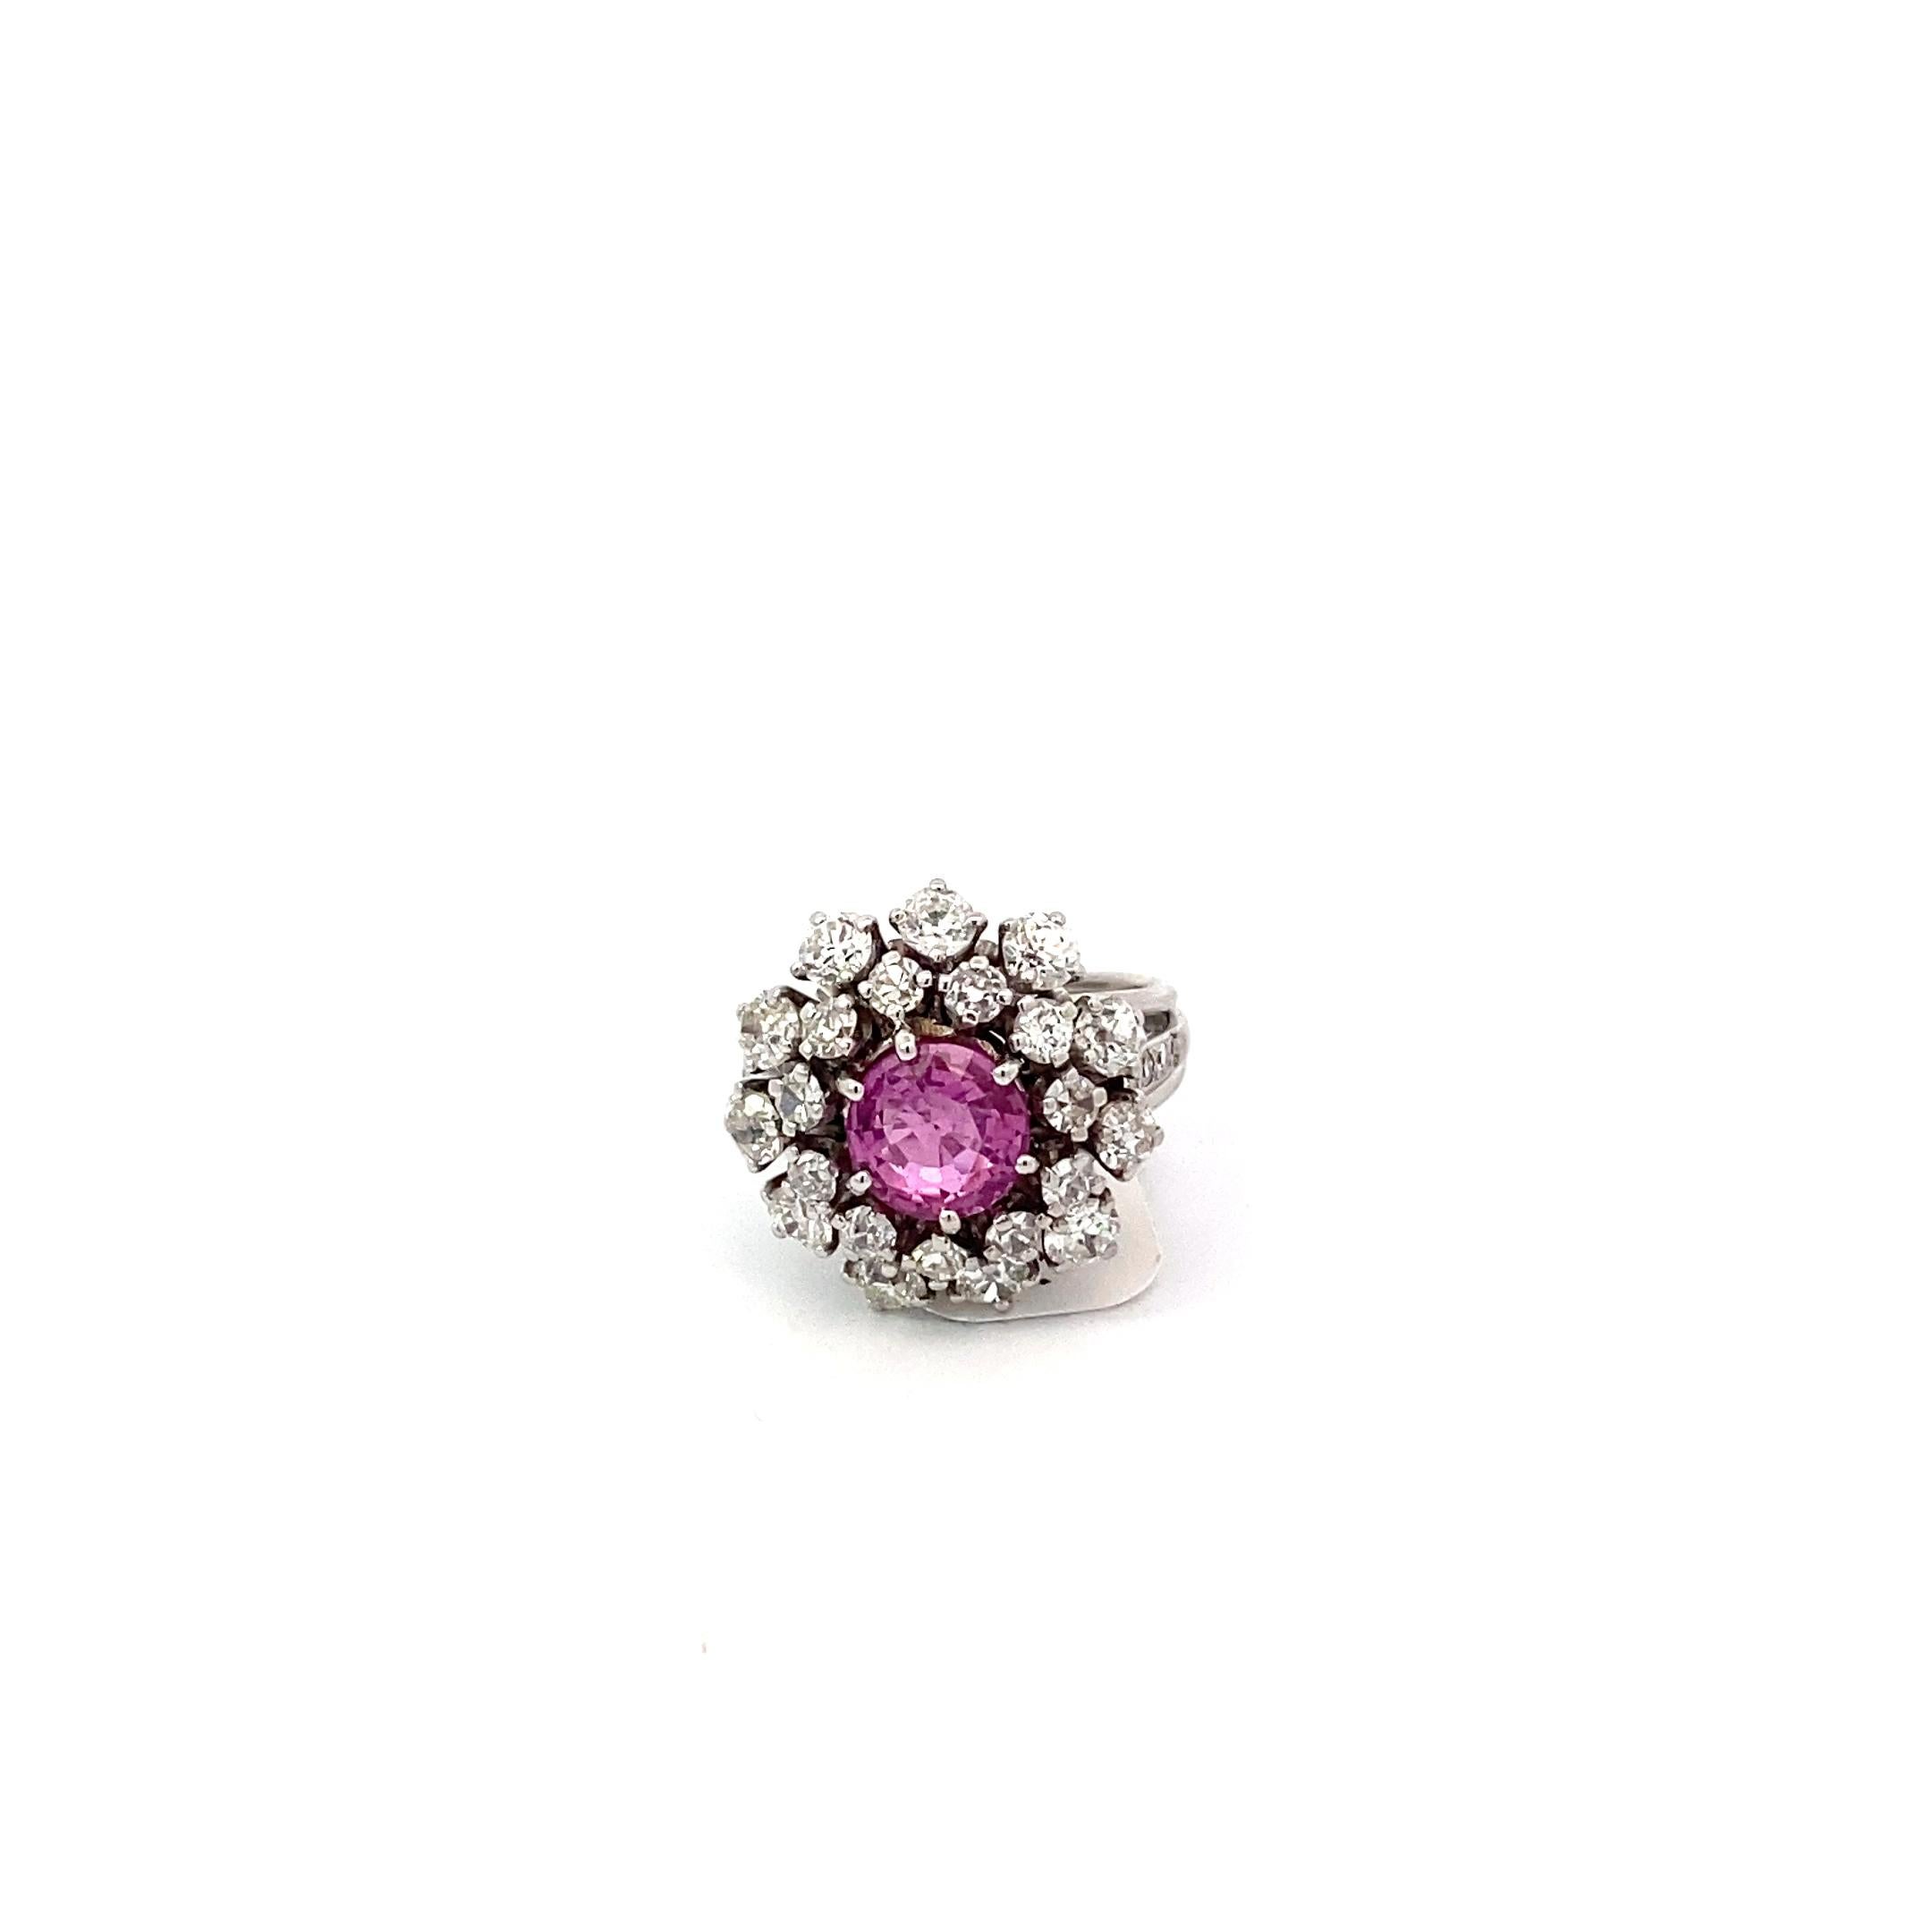 Dieser wunderschöne Ring aus der Mitte des Jahrhunderts zeigt einen einzigartigen rosa Saphir von 2,04 Karat, umgeben von dreißig (30) Diamanten im Old European Cut und Siblige Cut (ca. 2 Karat) in einer Halo-Fassung. Dieser massive Ring hat es in